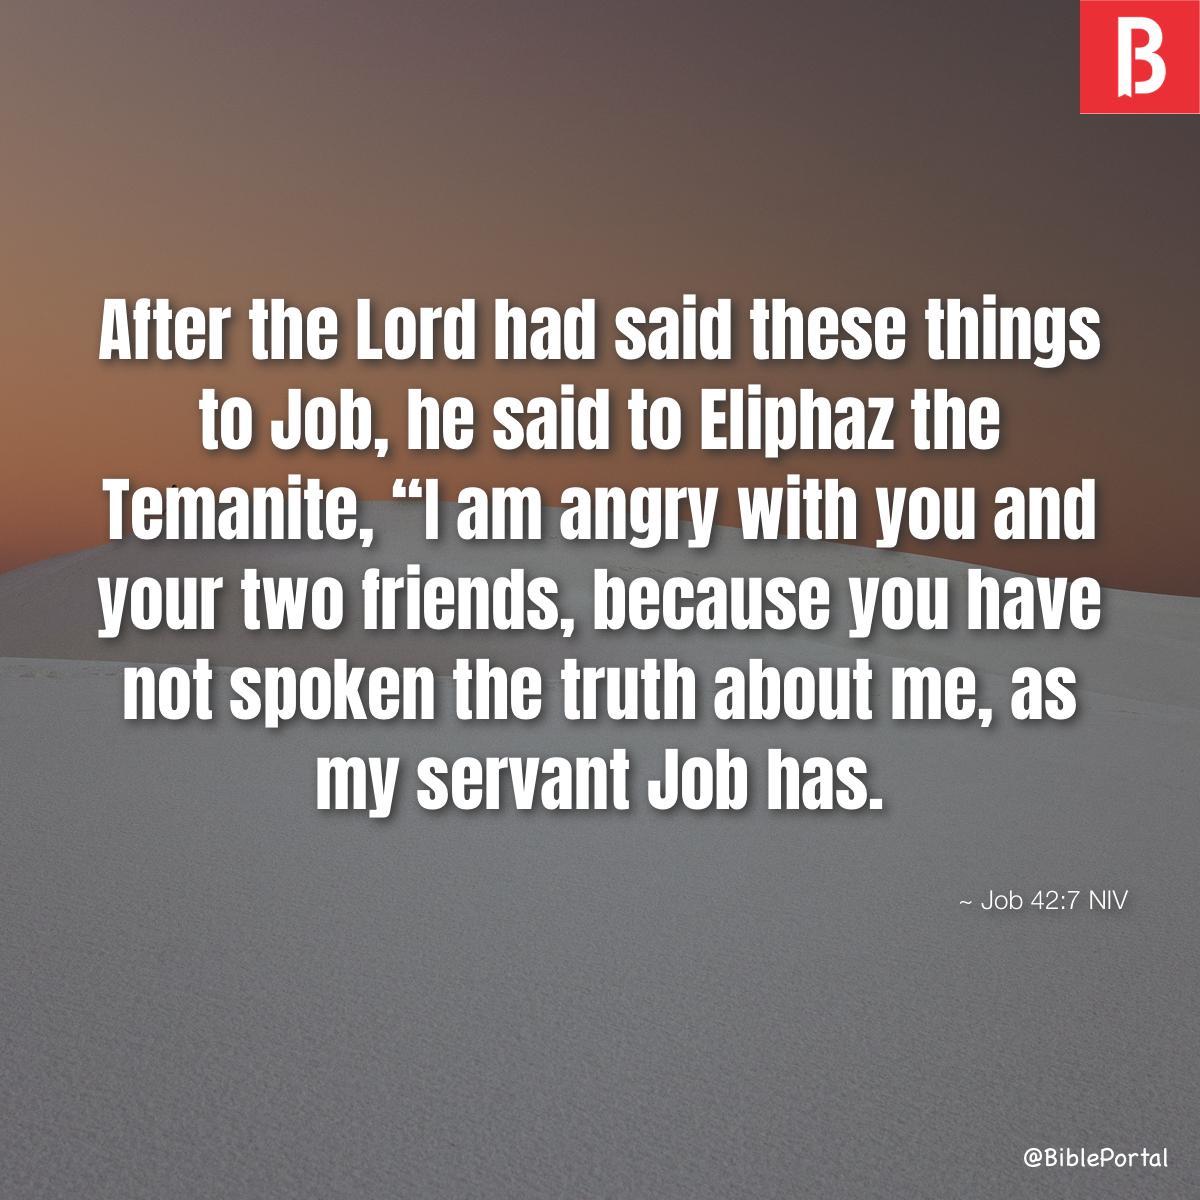 Job 42:7 NIV